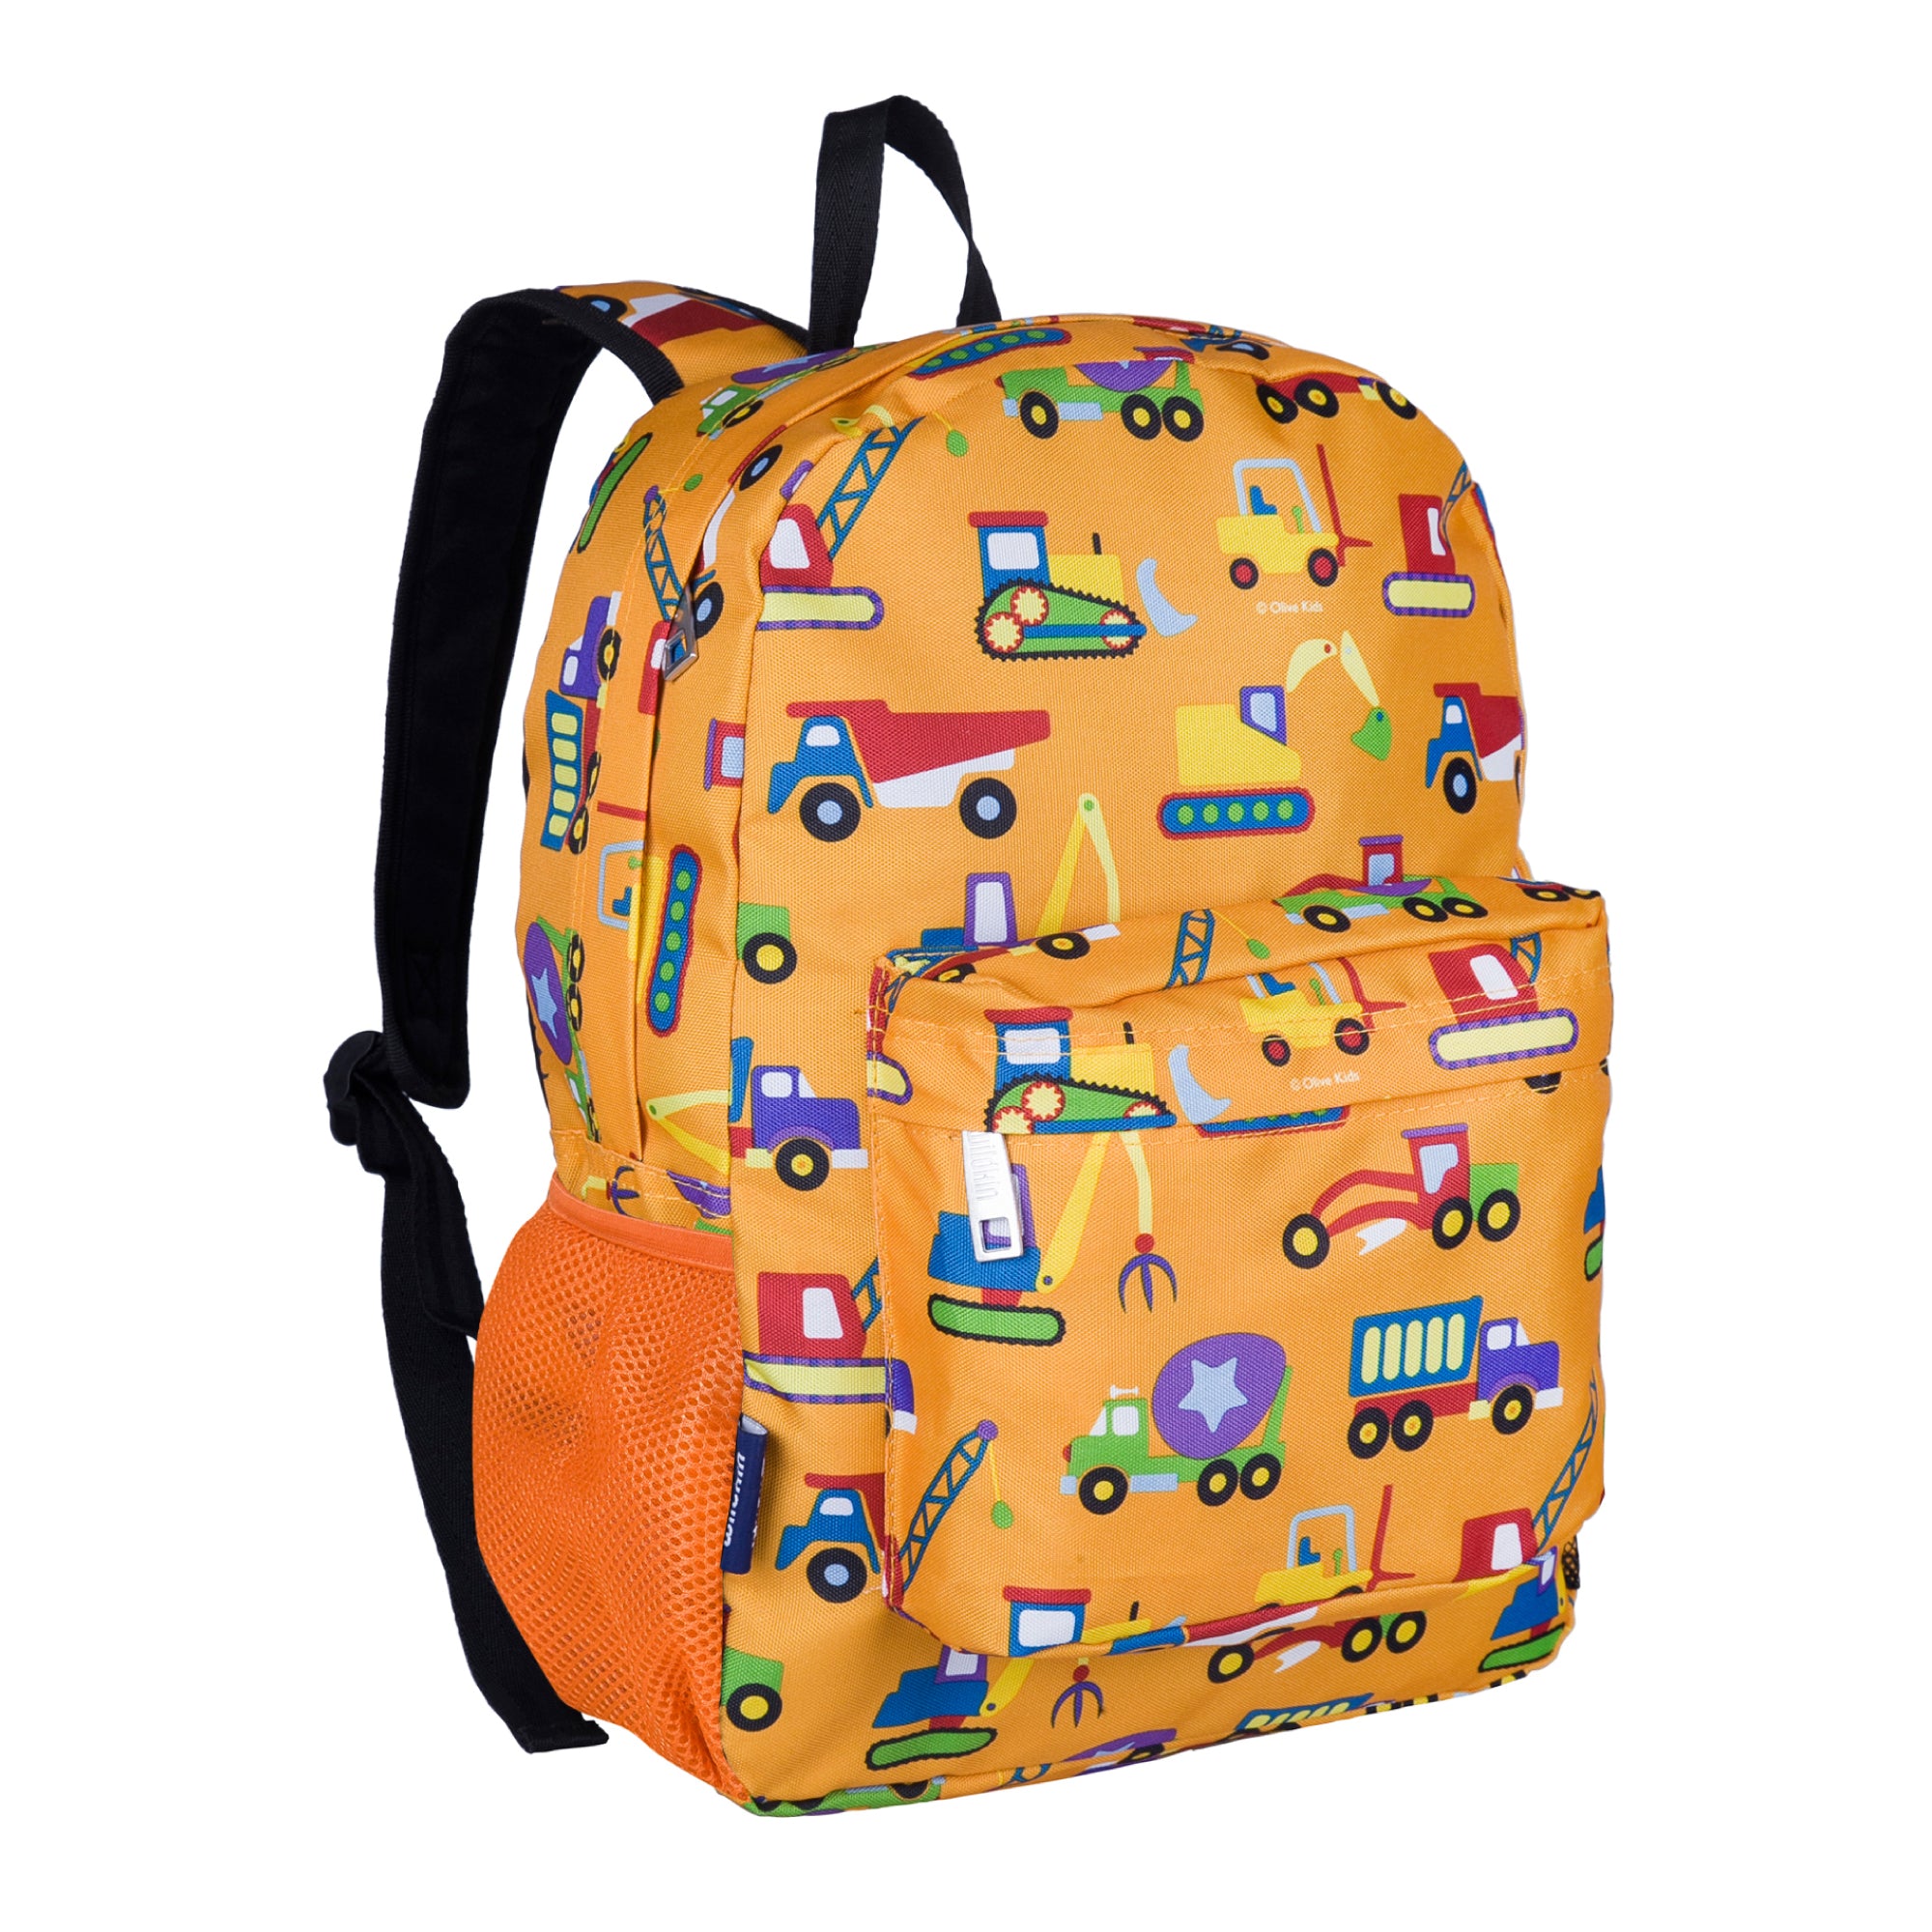 Wildkin 16 Inch Kids Backpack